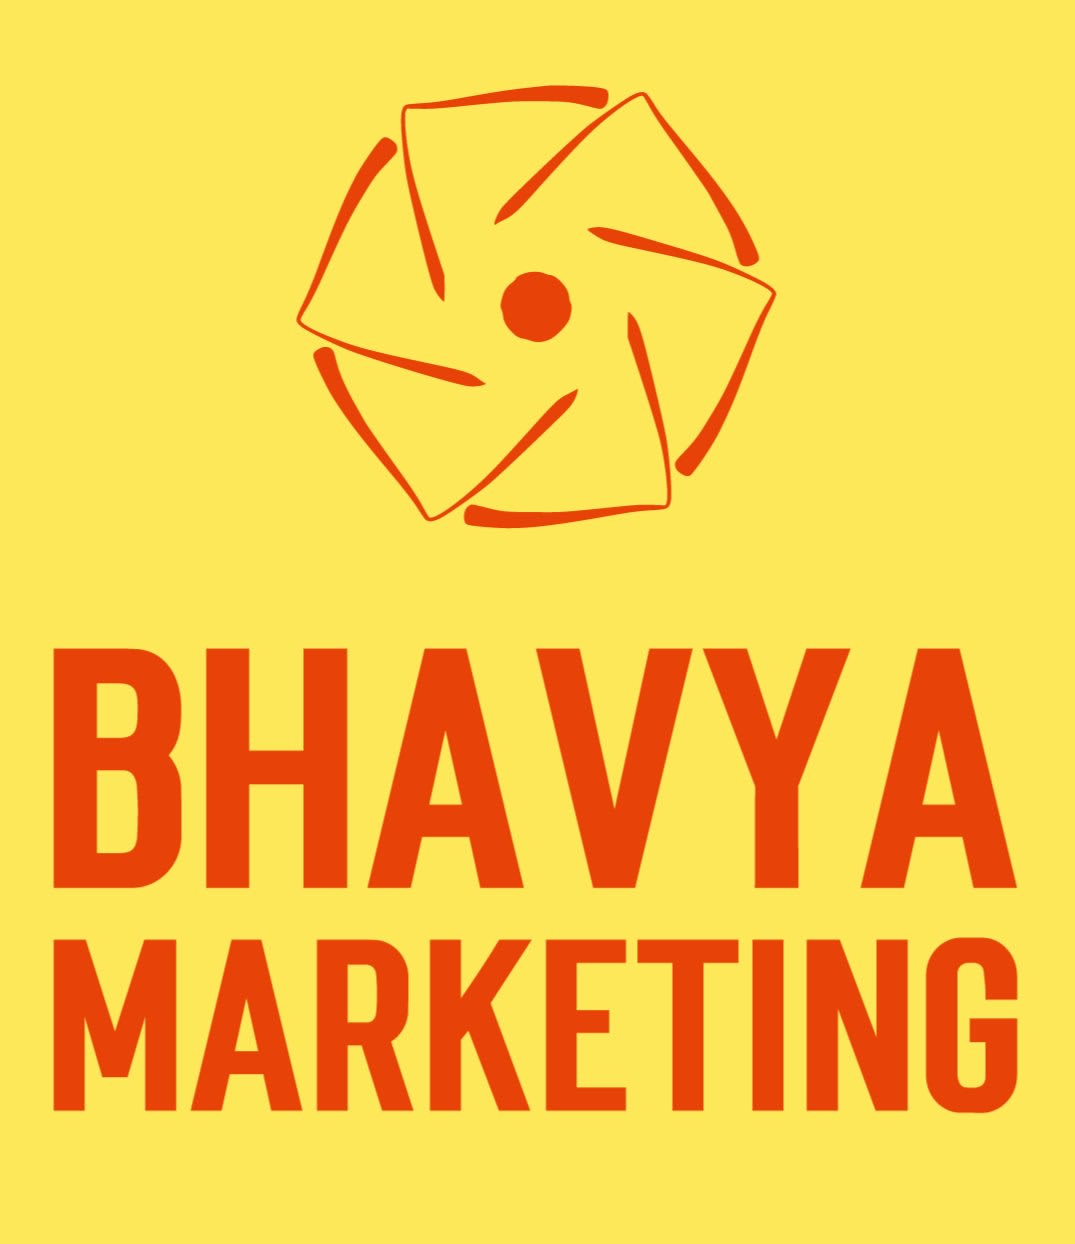 Bhavya Marketing